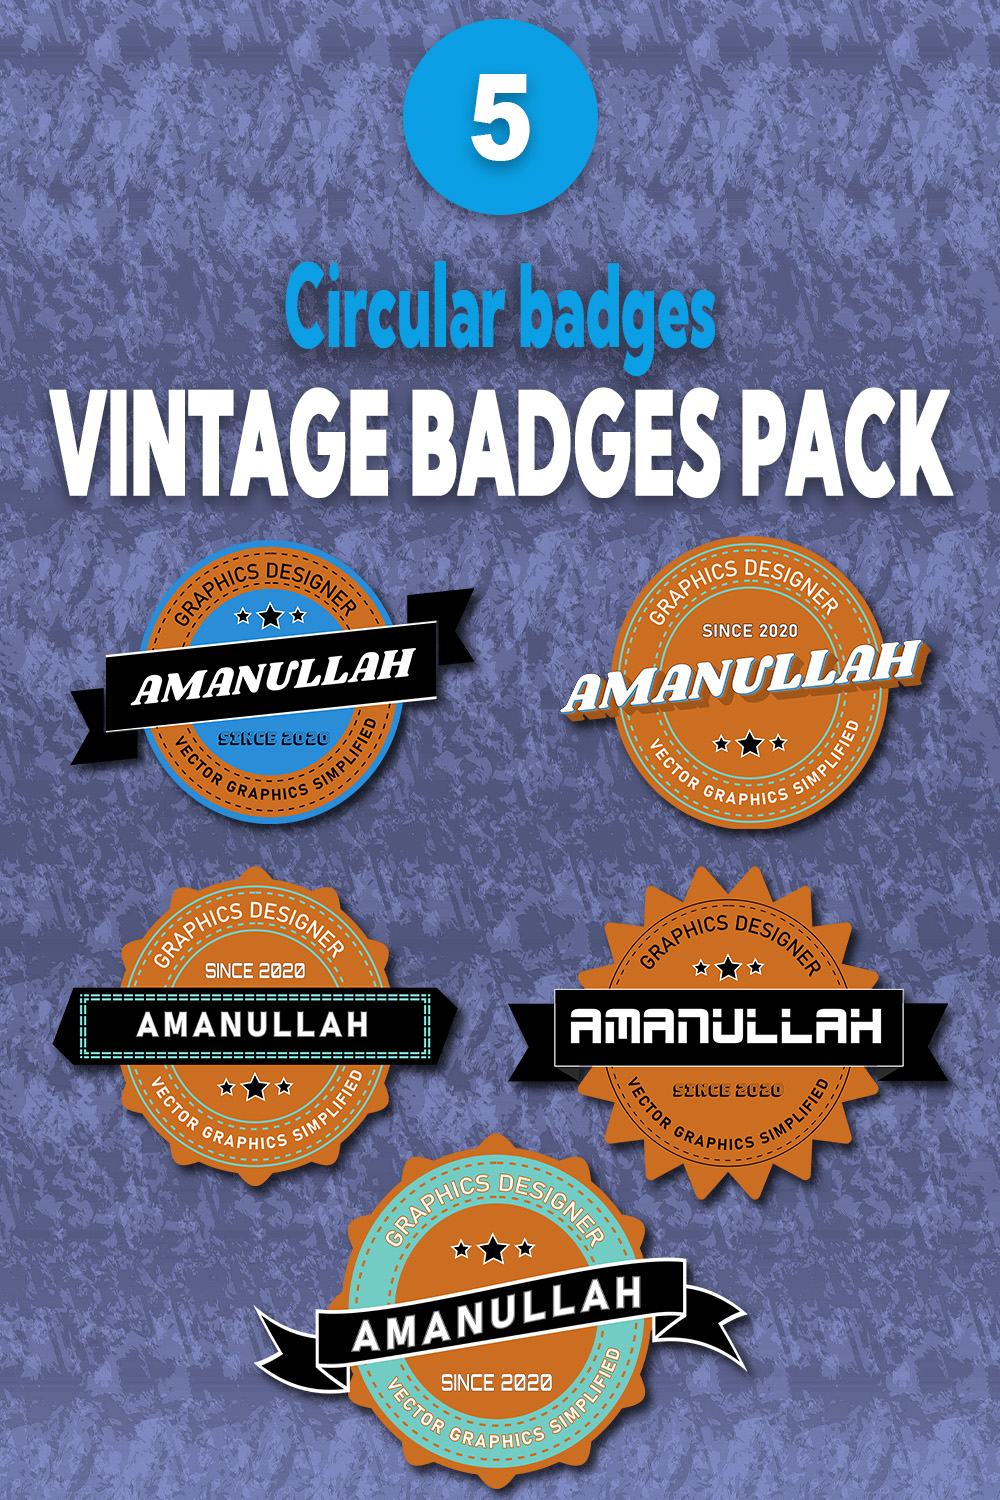 5 Vintage Badges Pack Pinterest Image.